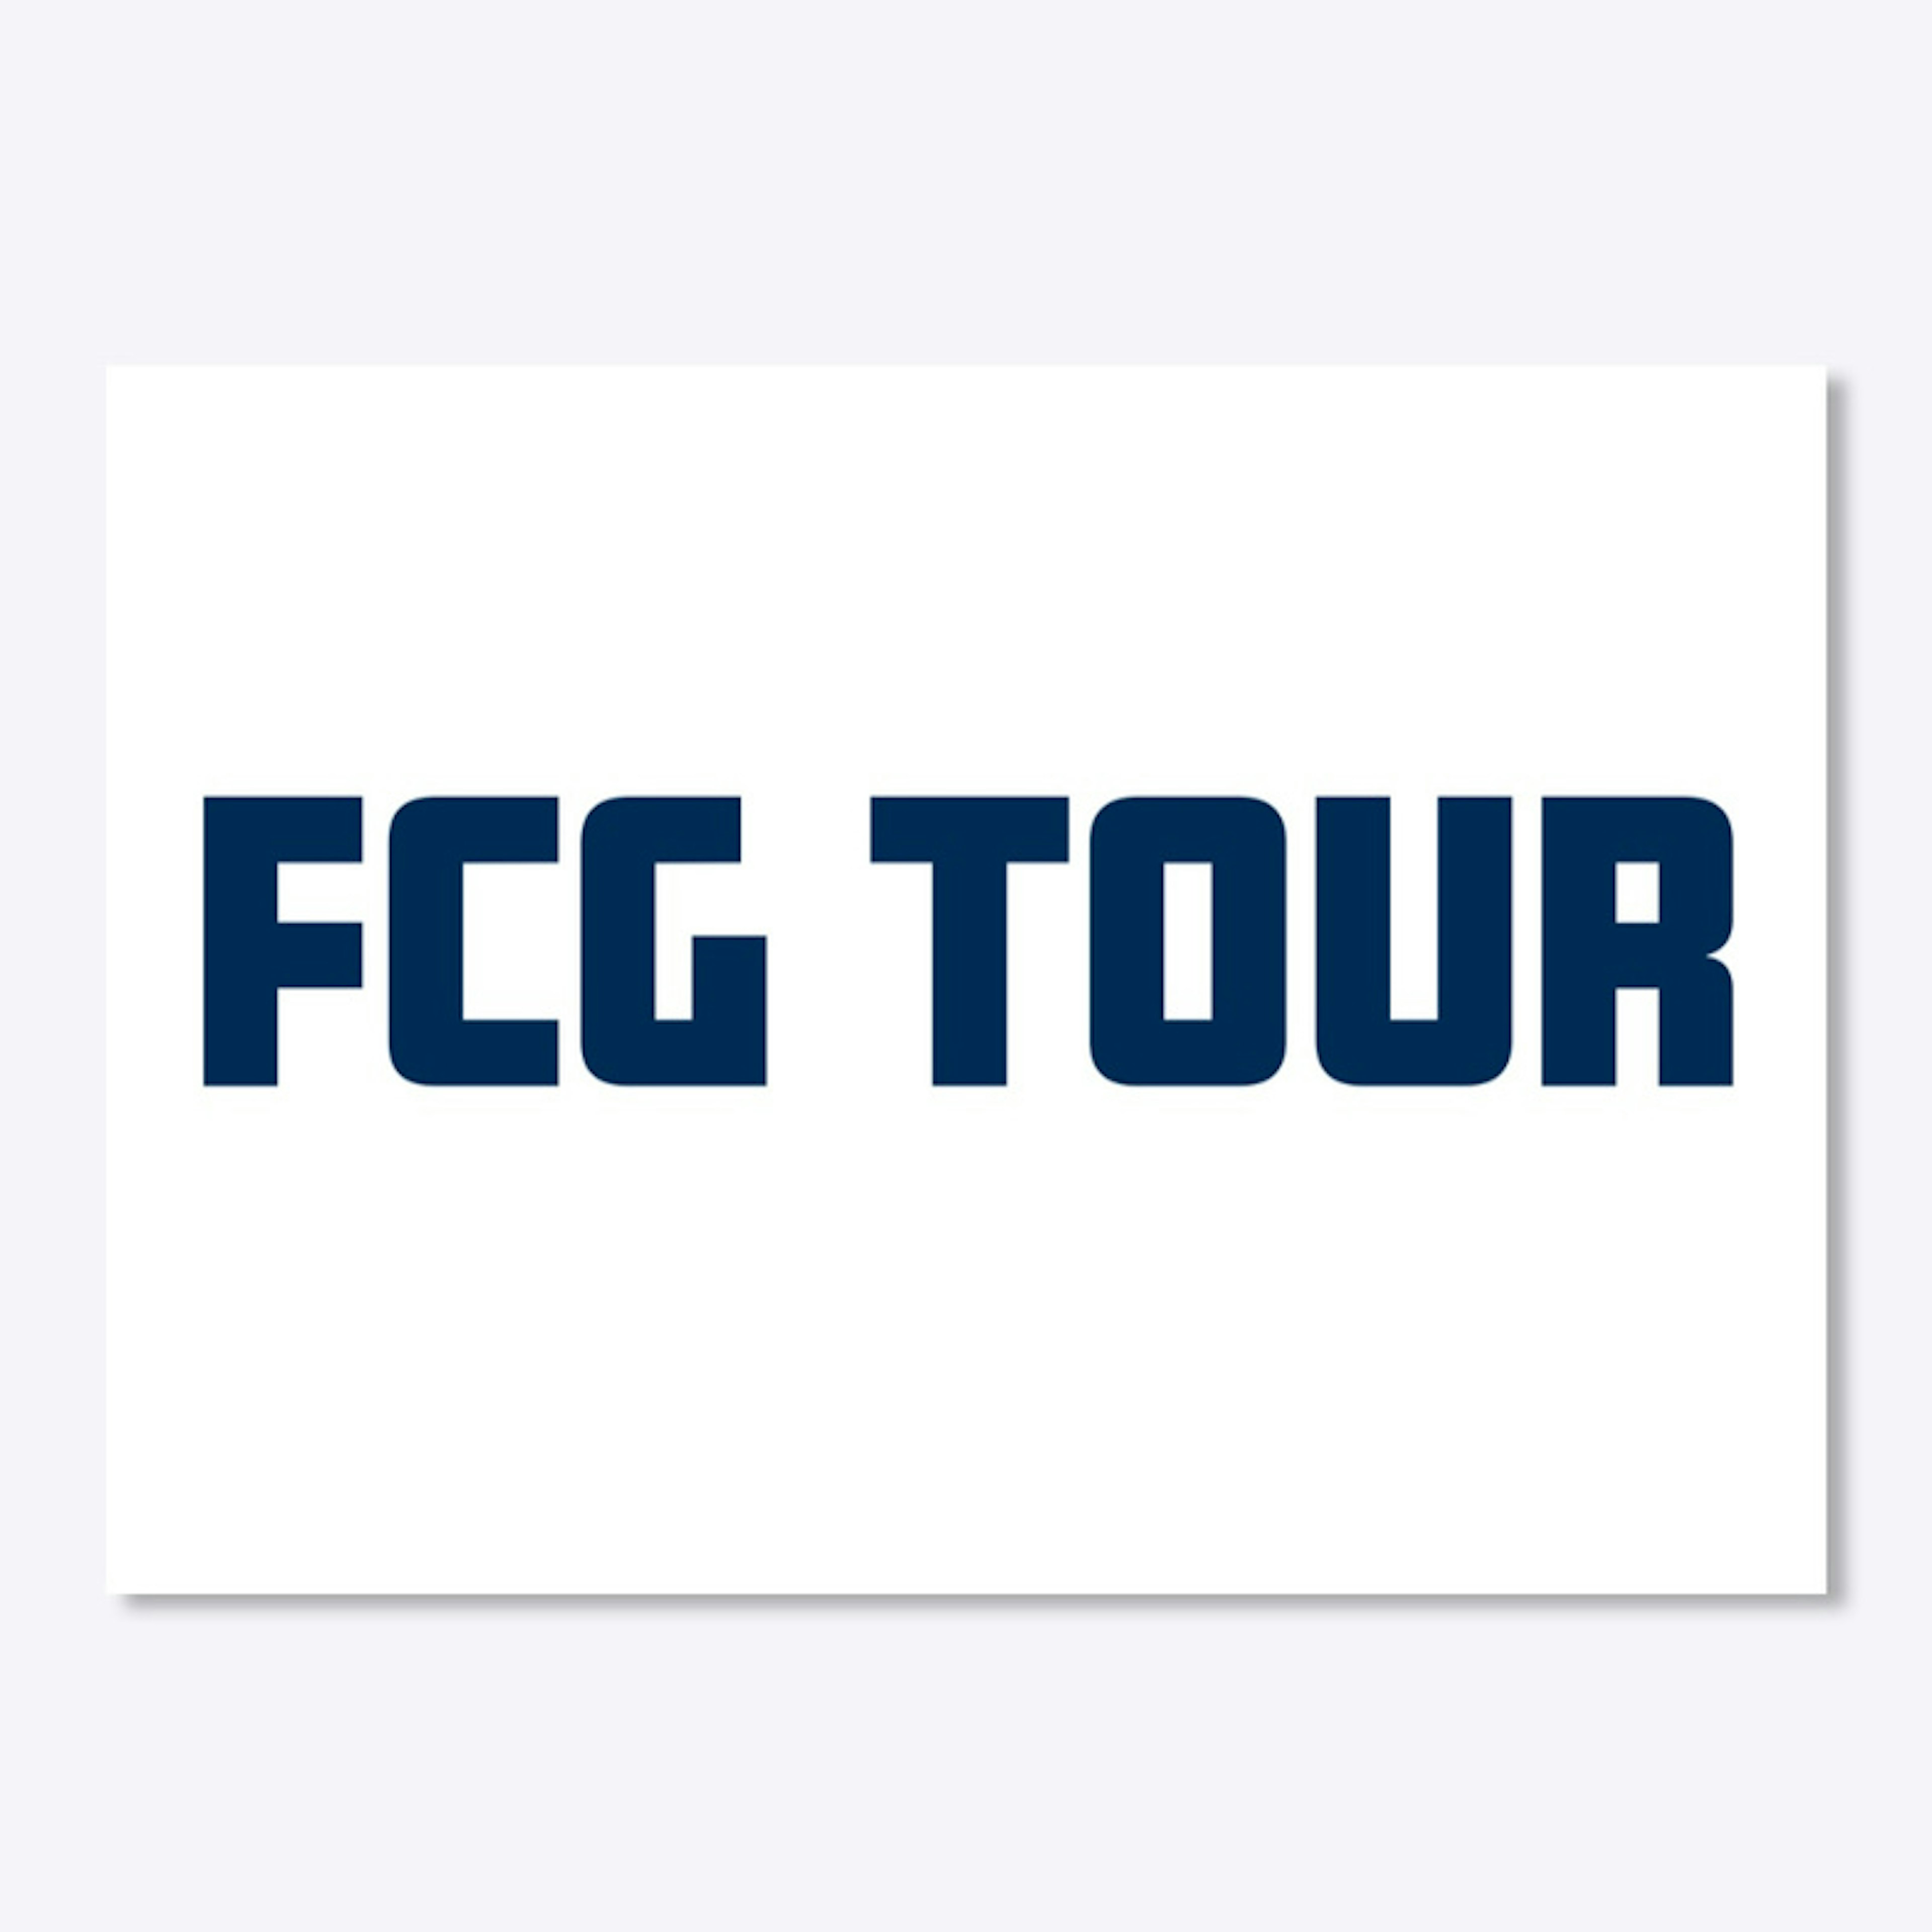 FCG TOUR 